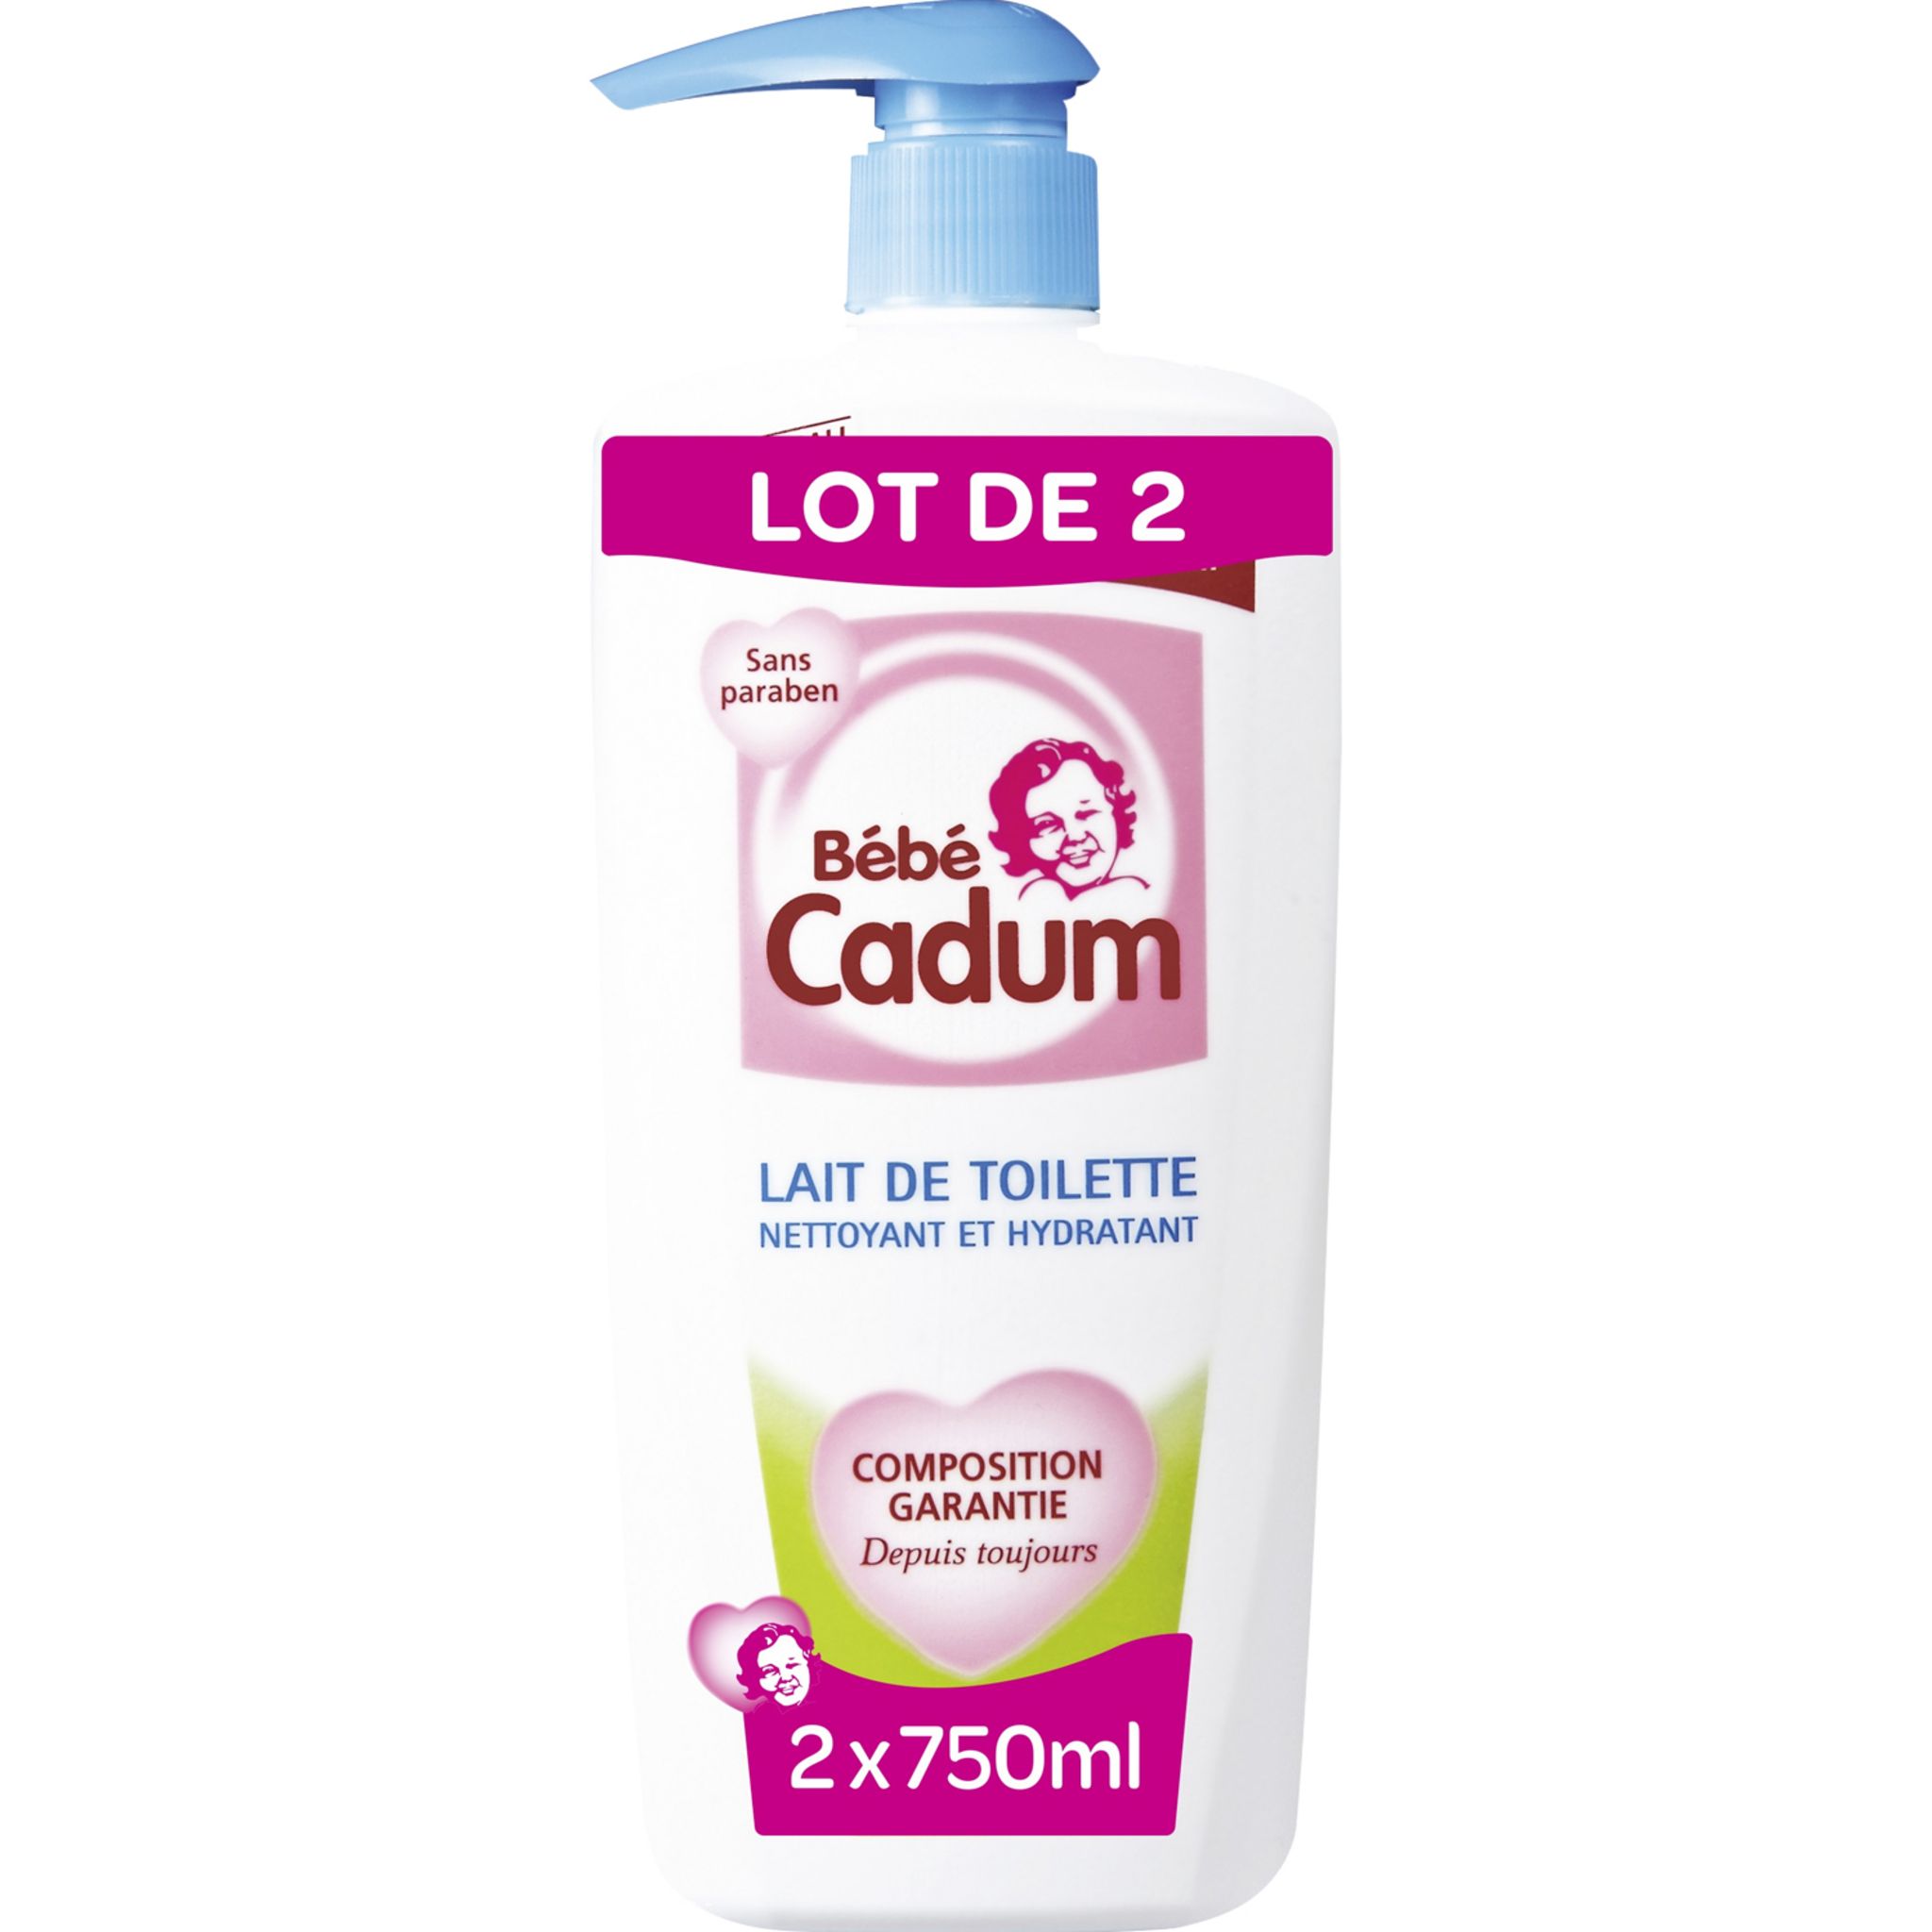 Promo Toilette Bébé CADUM chez Carrefour